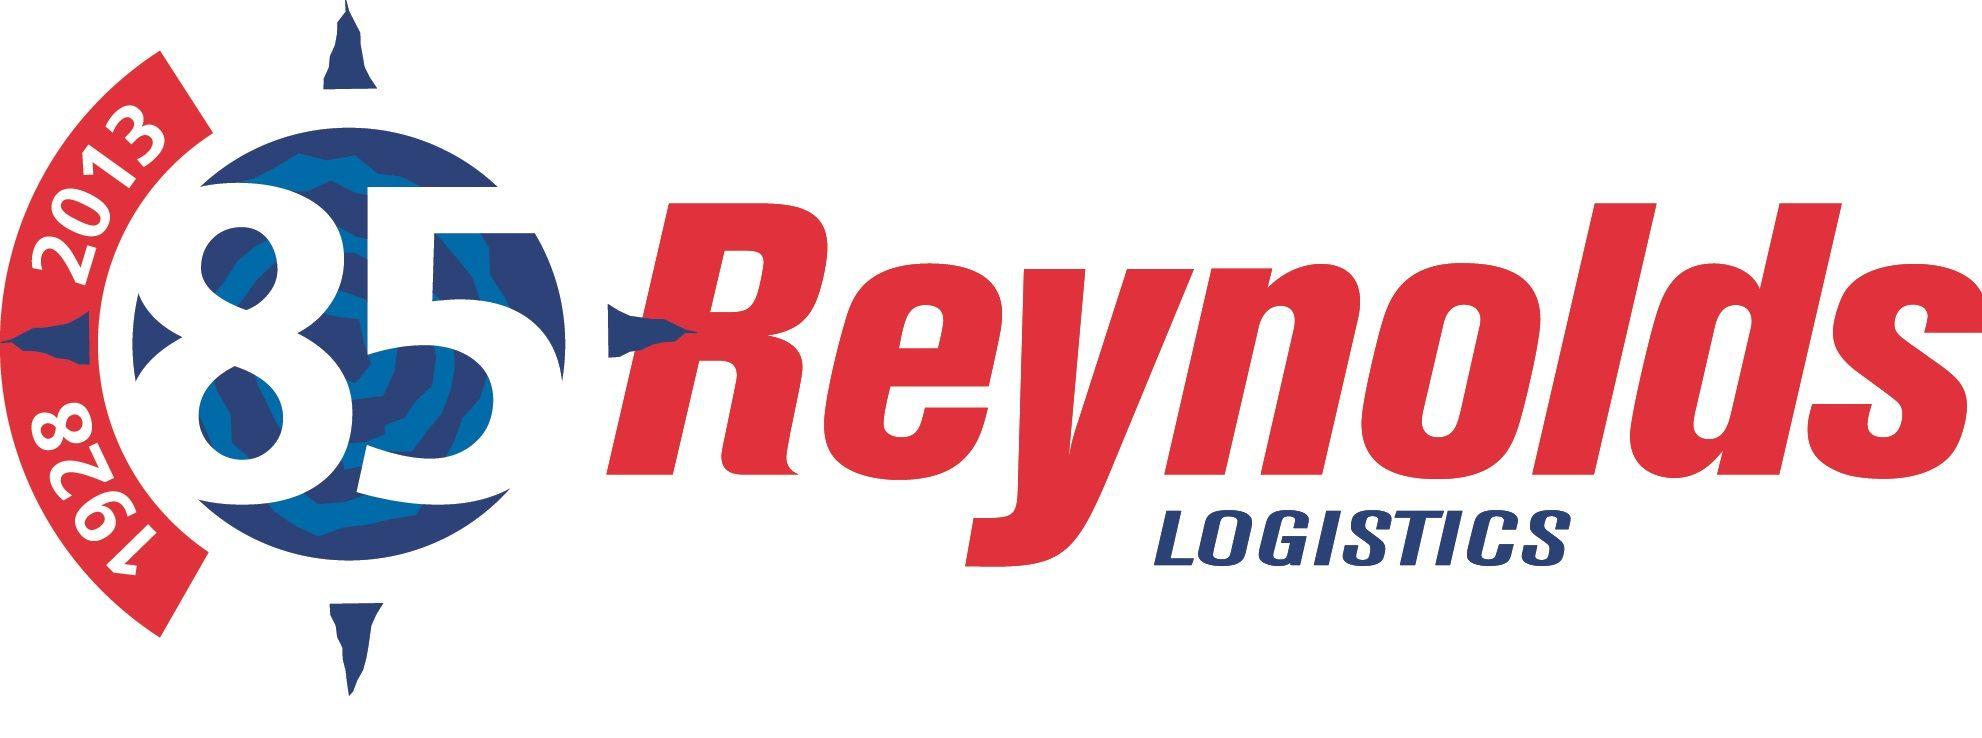 Leading Logistics Company Logo - Irish & UK Transport Company Reynolds Logistics celebrates 85 years